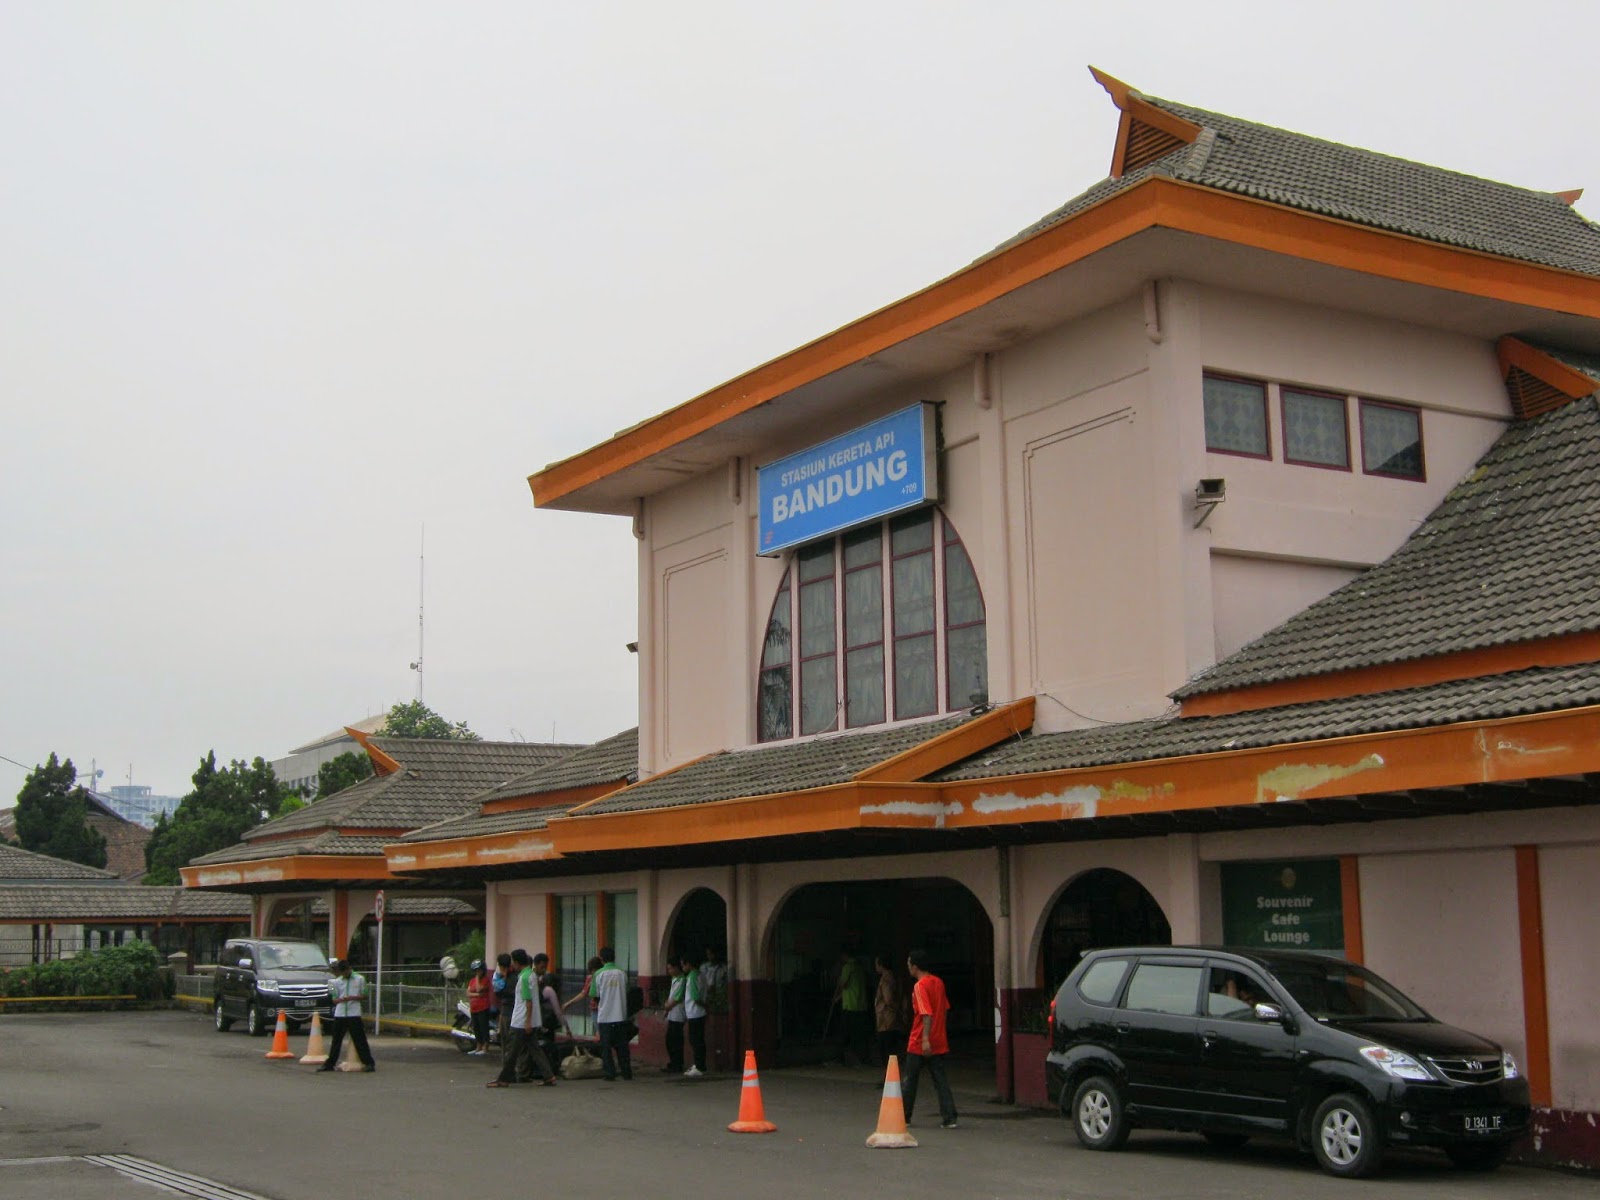 Bandung tempo dulu: Stasiun Bandung, awal modernisasi sebuah kota